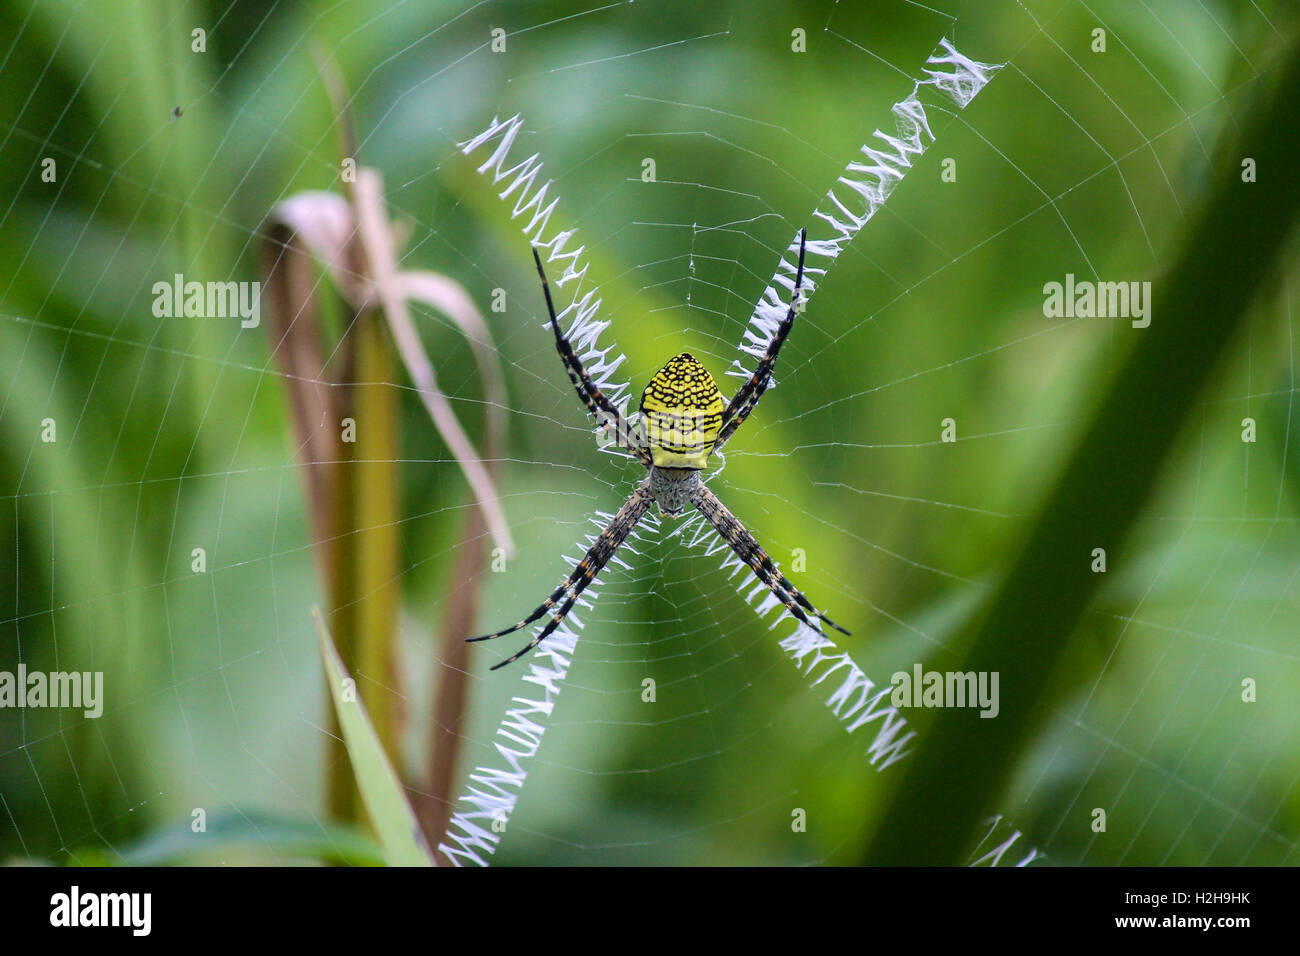 Signature Spider in Sri Lanka Stock Photo